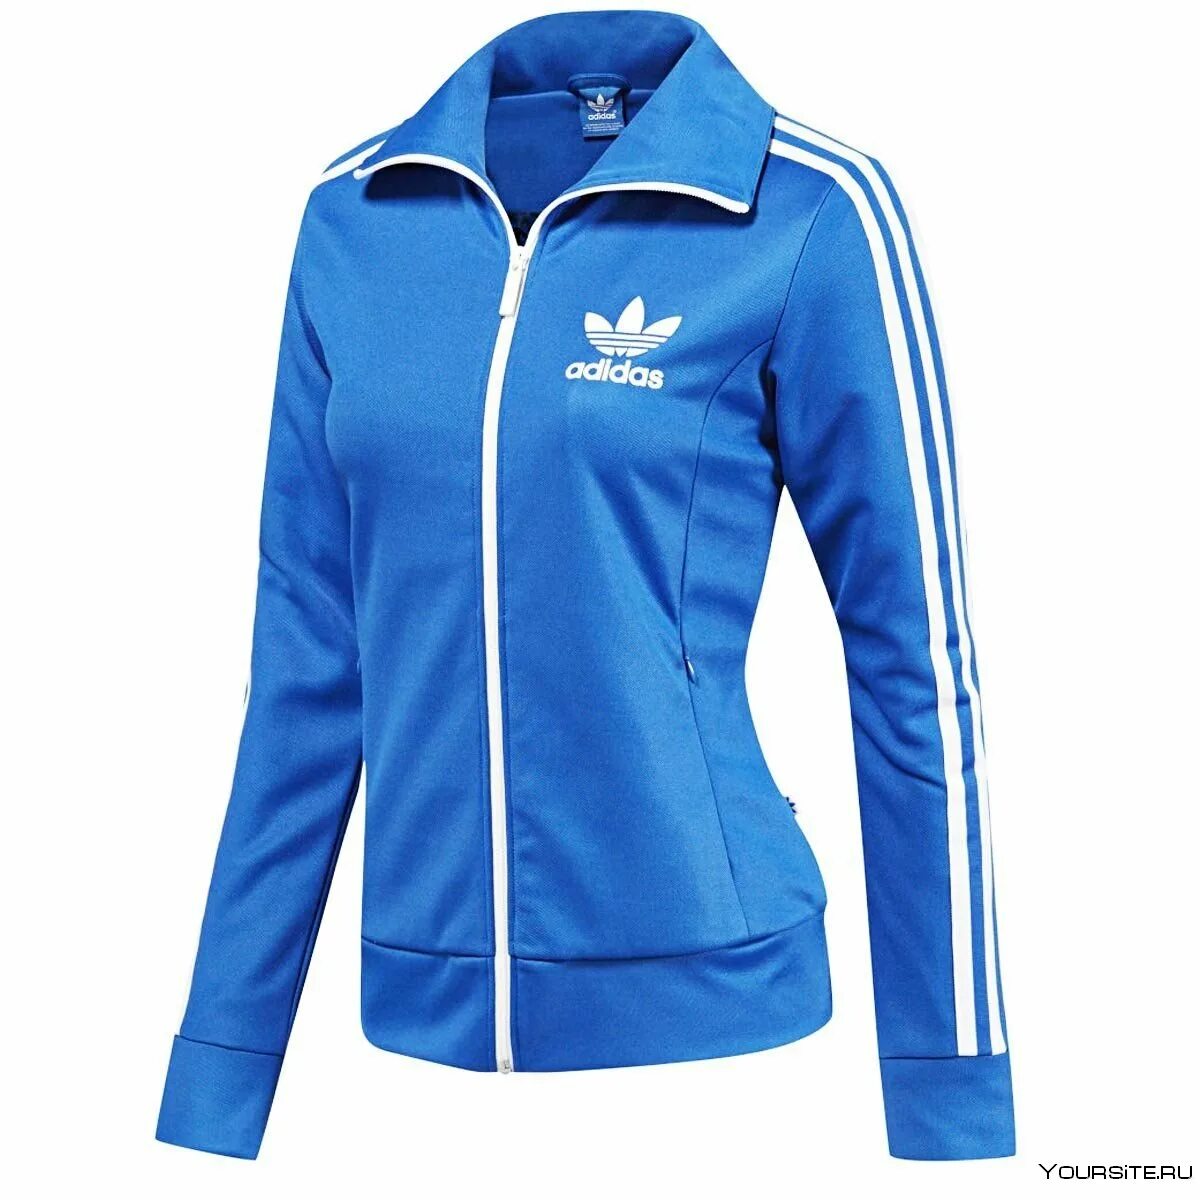 Tracksuit adidas женский. Adidas track Top женская. Adidas clime365 женский костюм. Олимпийка адидас женская синяя. Купить спортивную одежду женскую